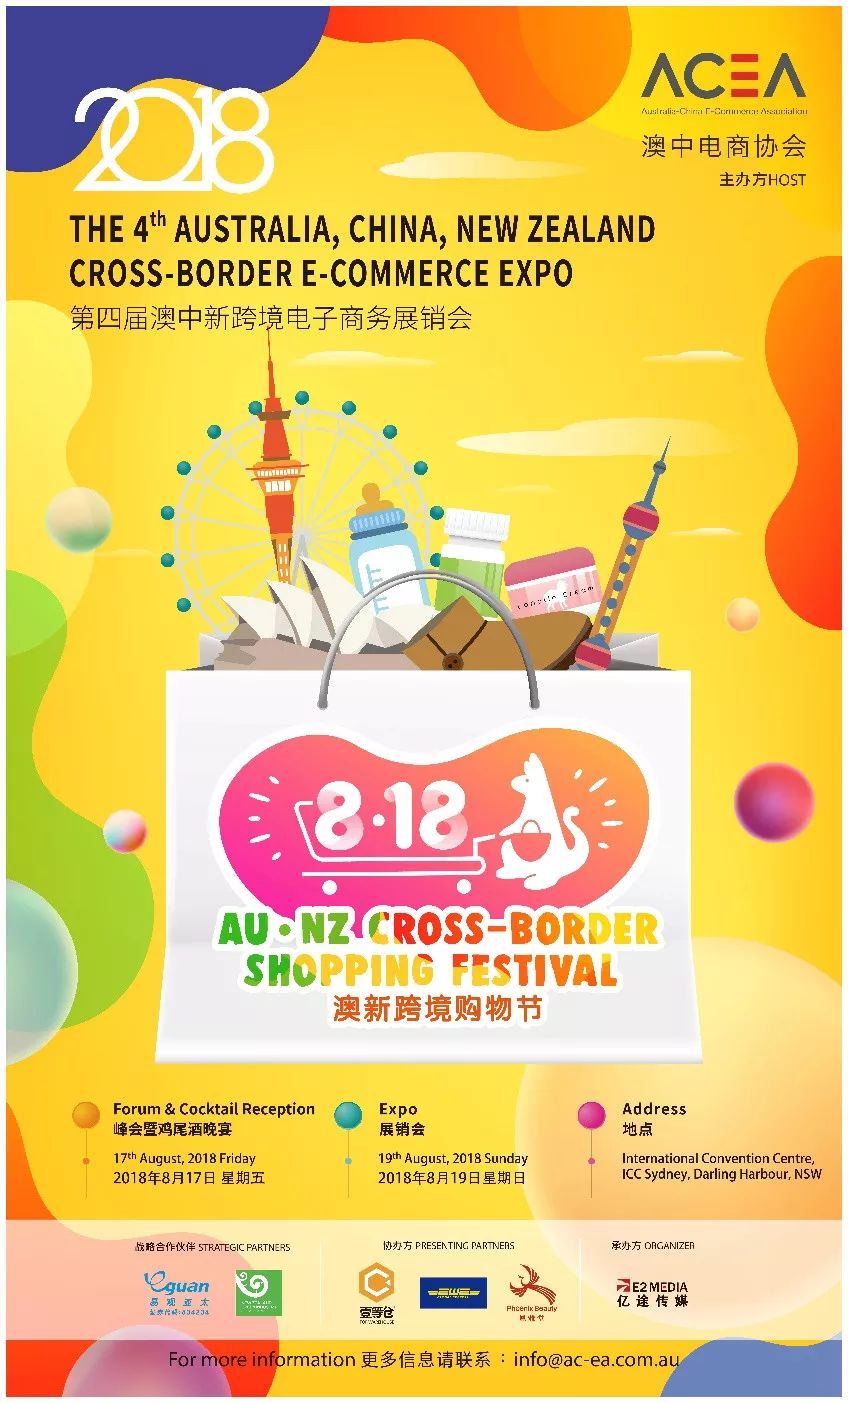 2018 The 4th Australia, China, New Zealand Cross-Border E-Commerce Expo